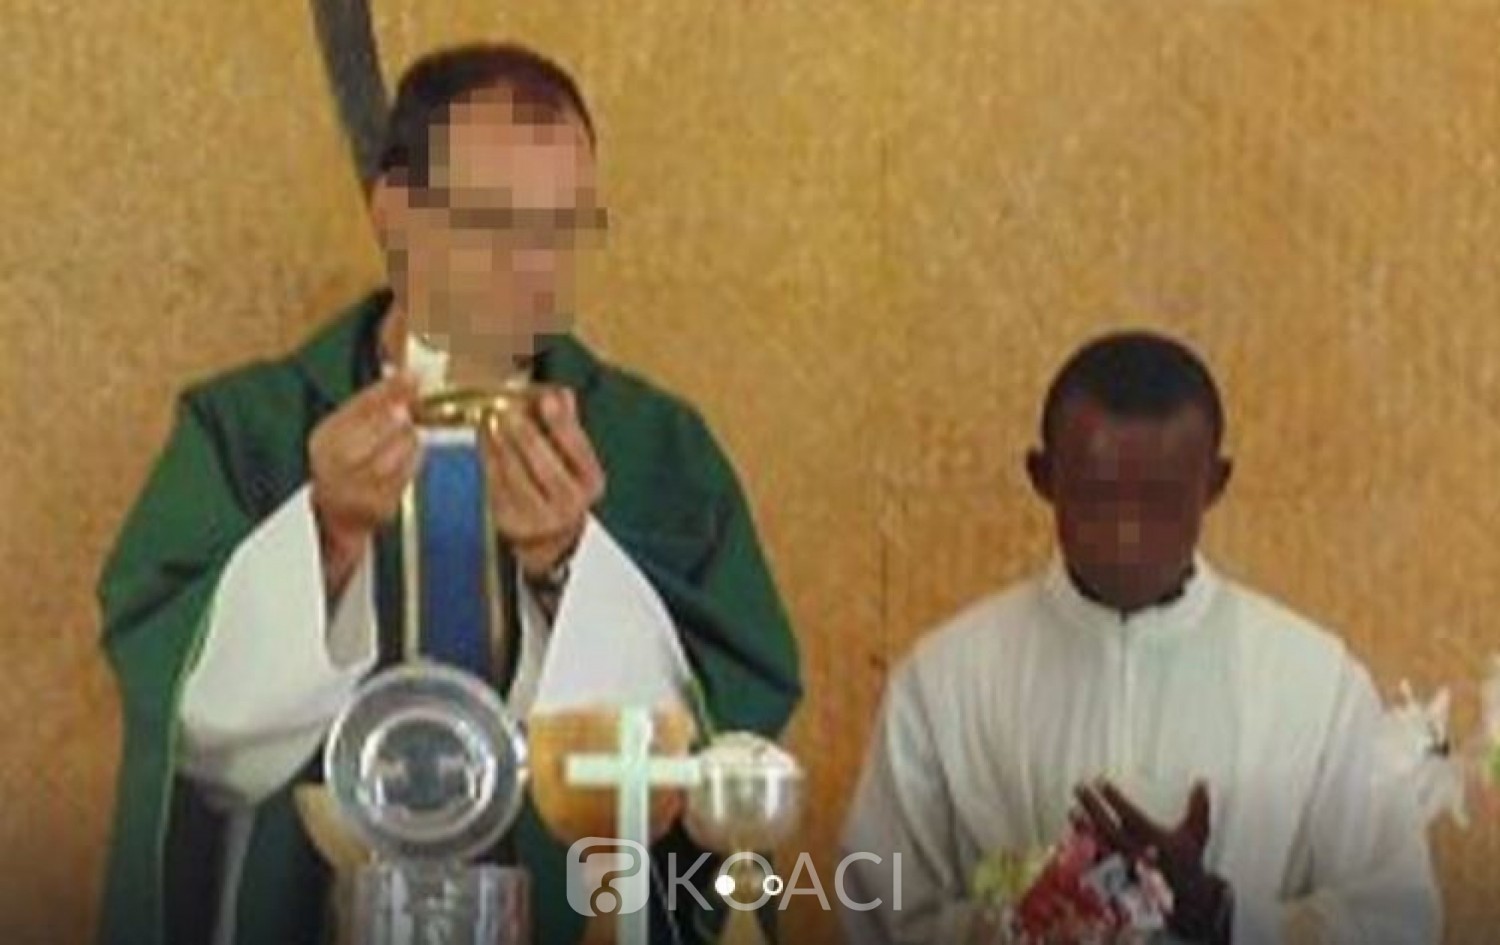 Centrafrique: Prêtre accusé d'abus sexuels, l'ONU suspend sa collaboration avec la Caritas